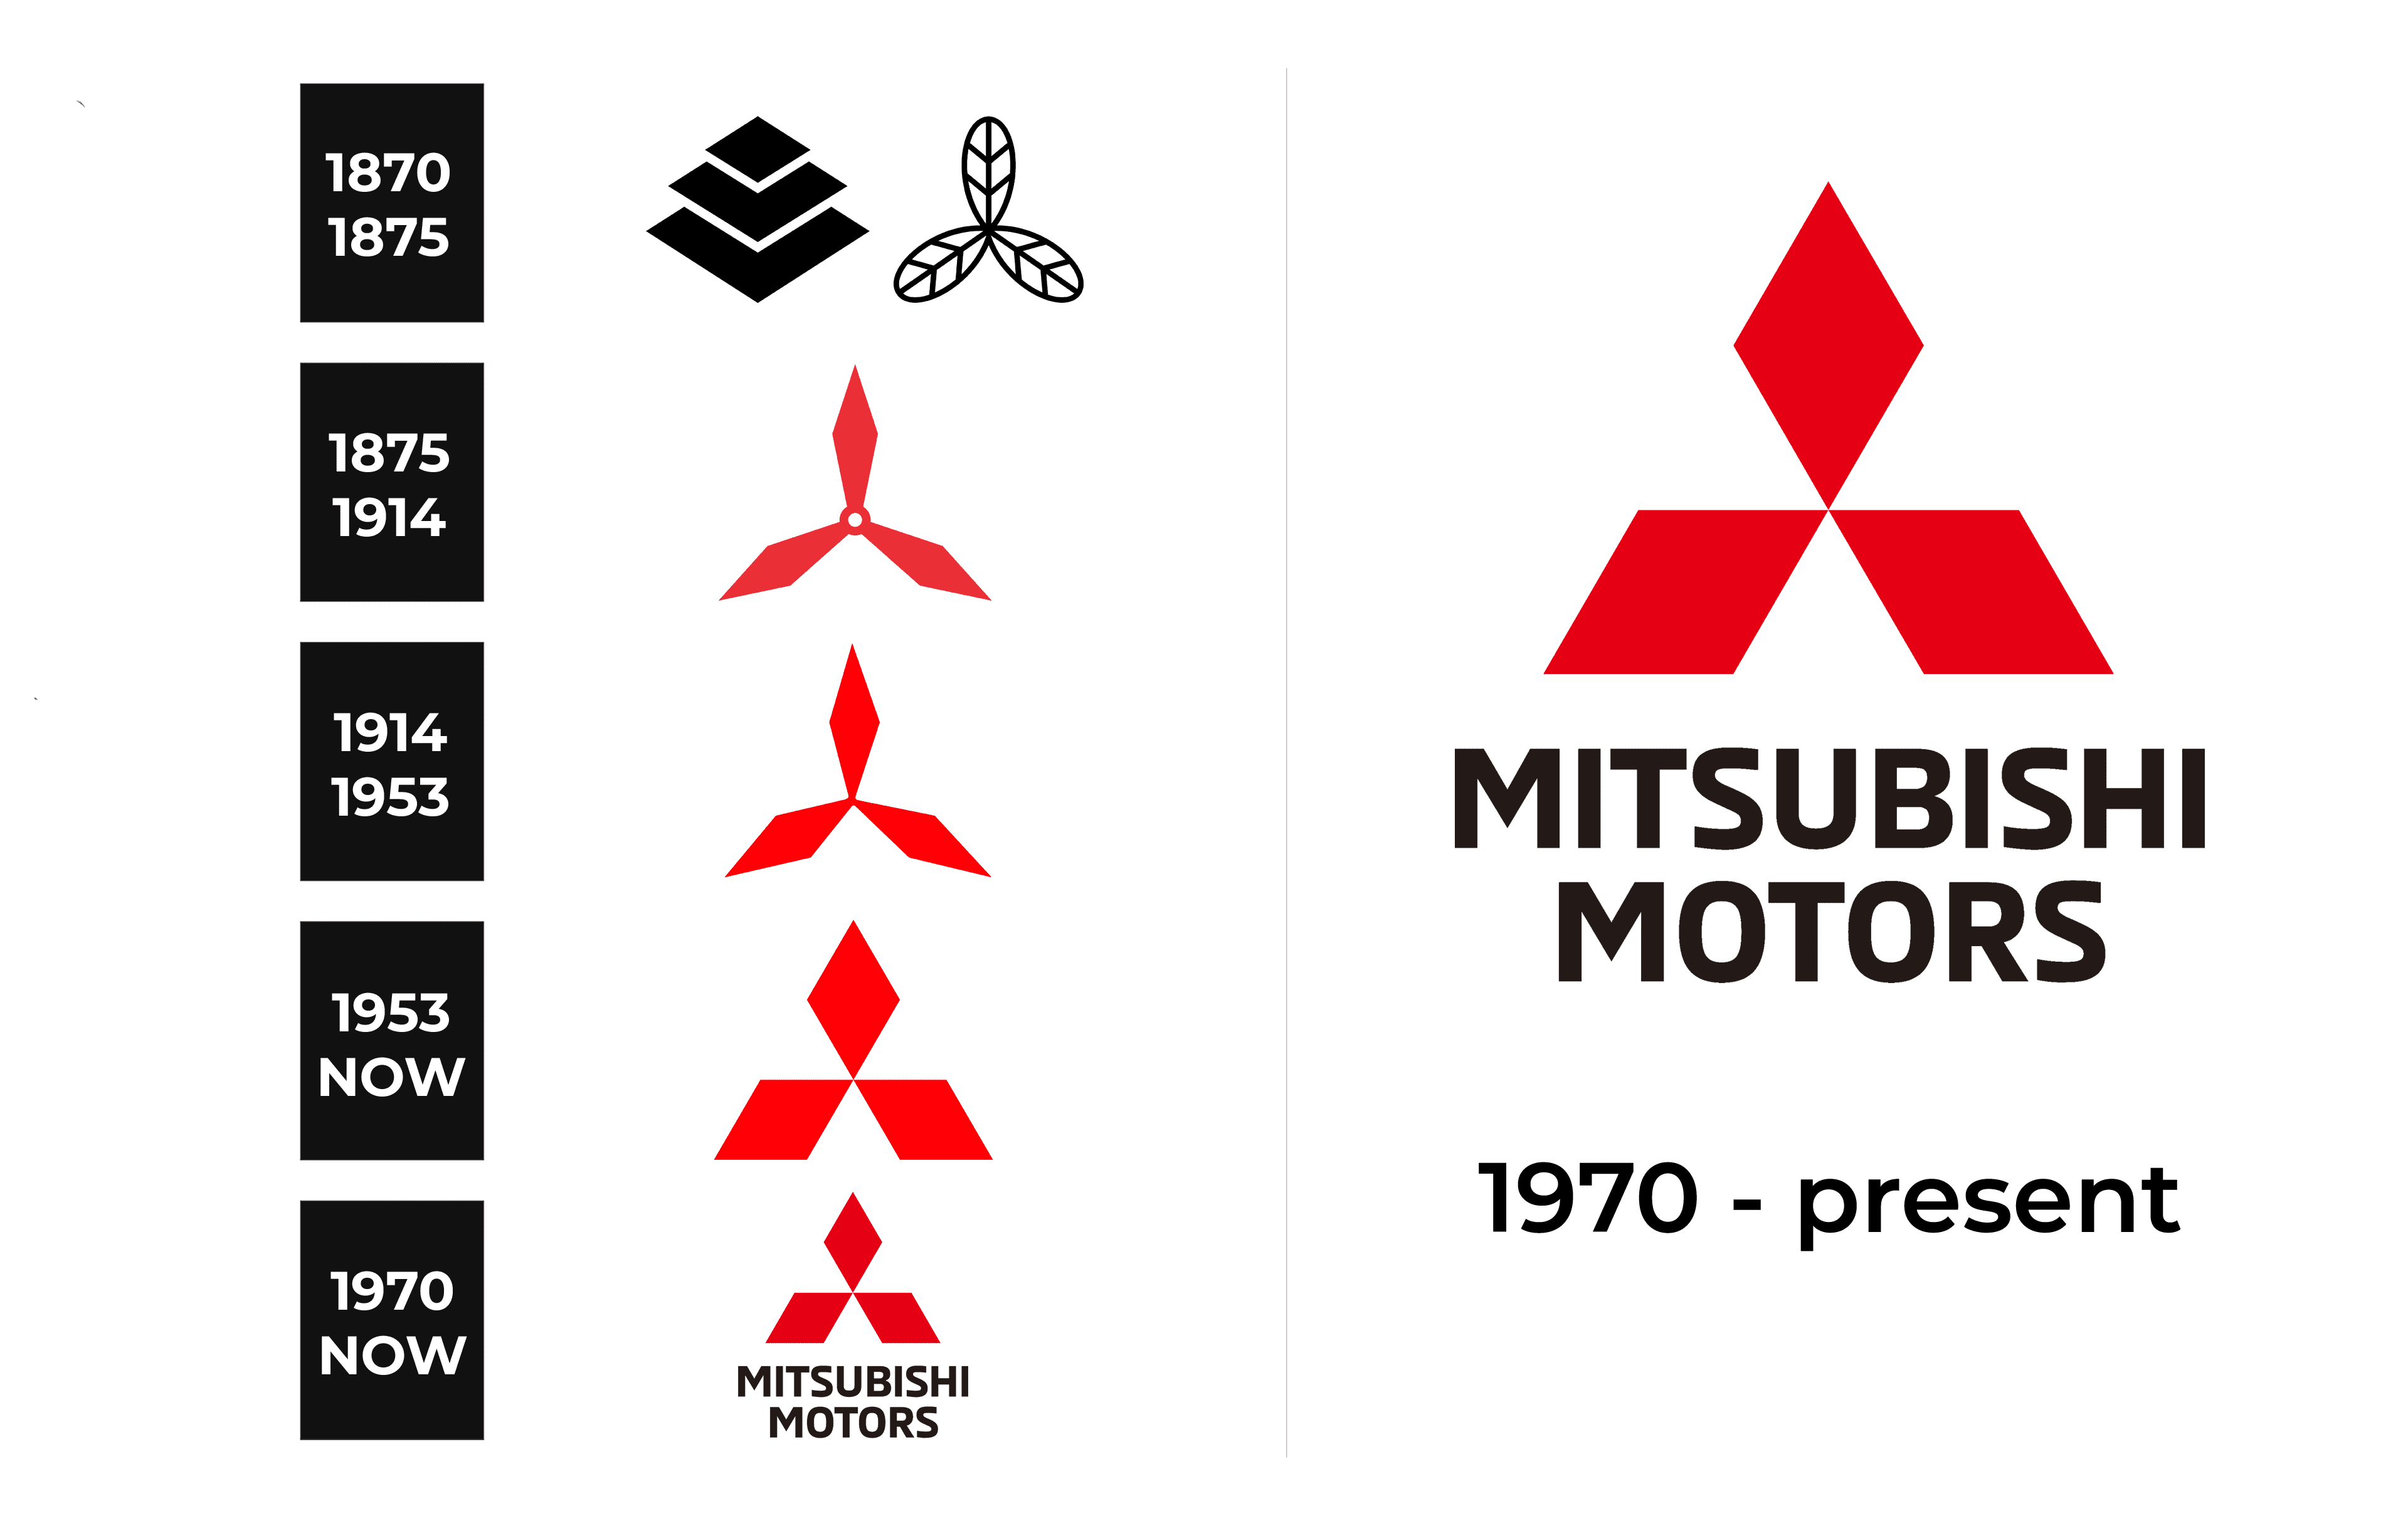 mitsubishi japan logo